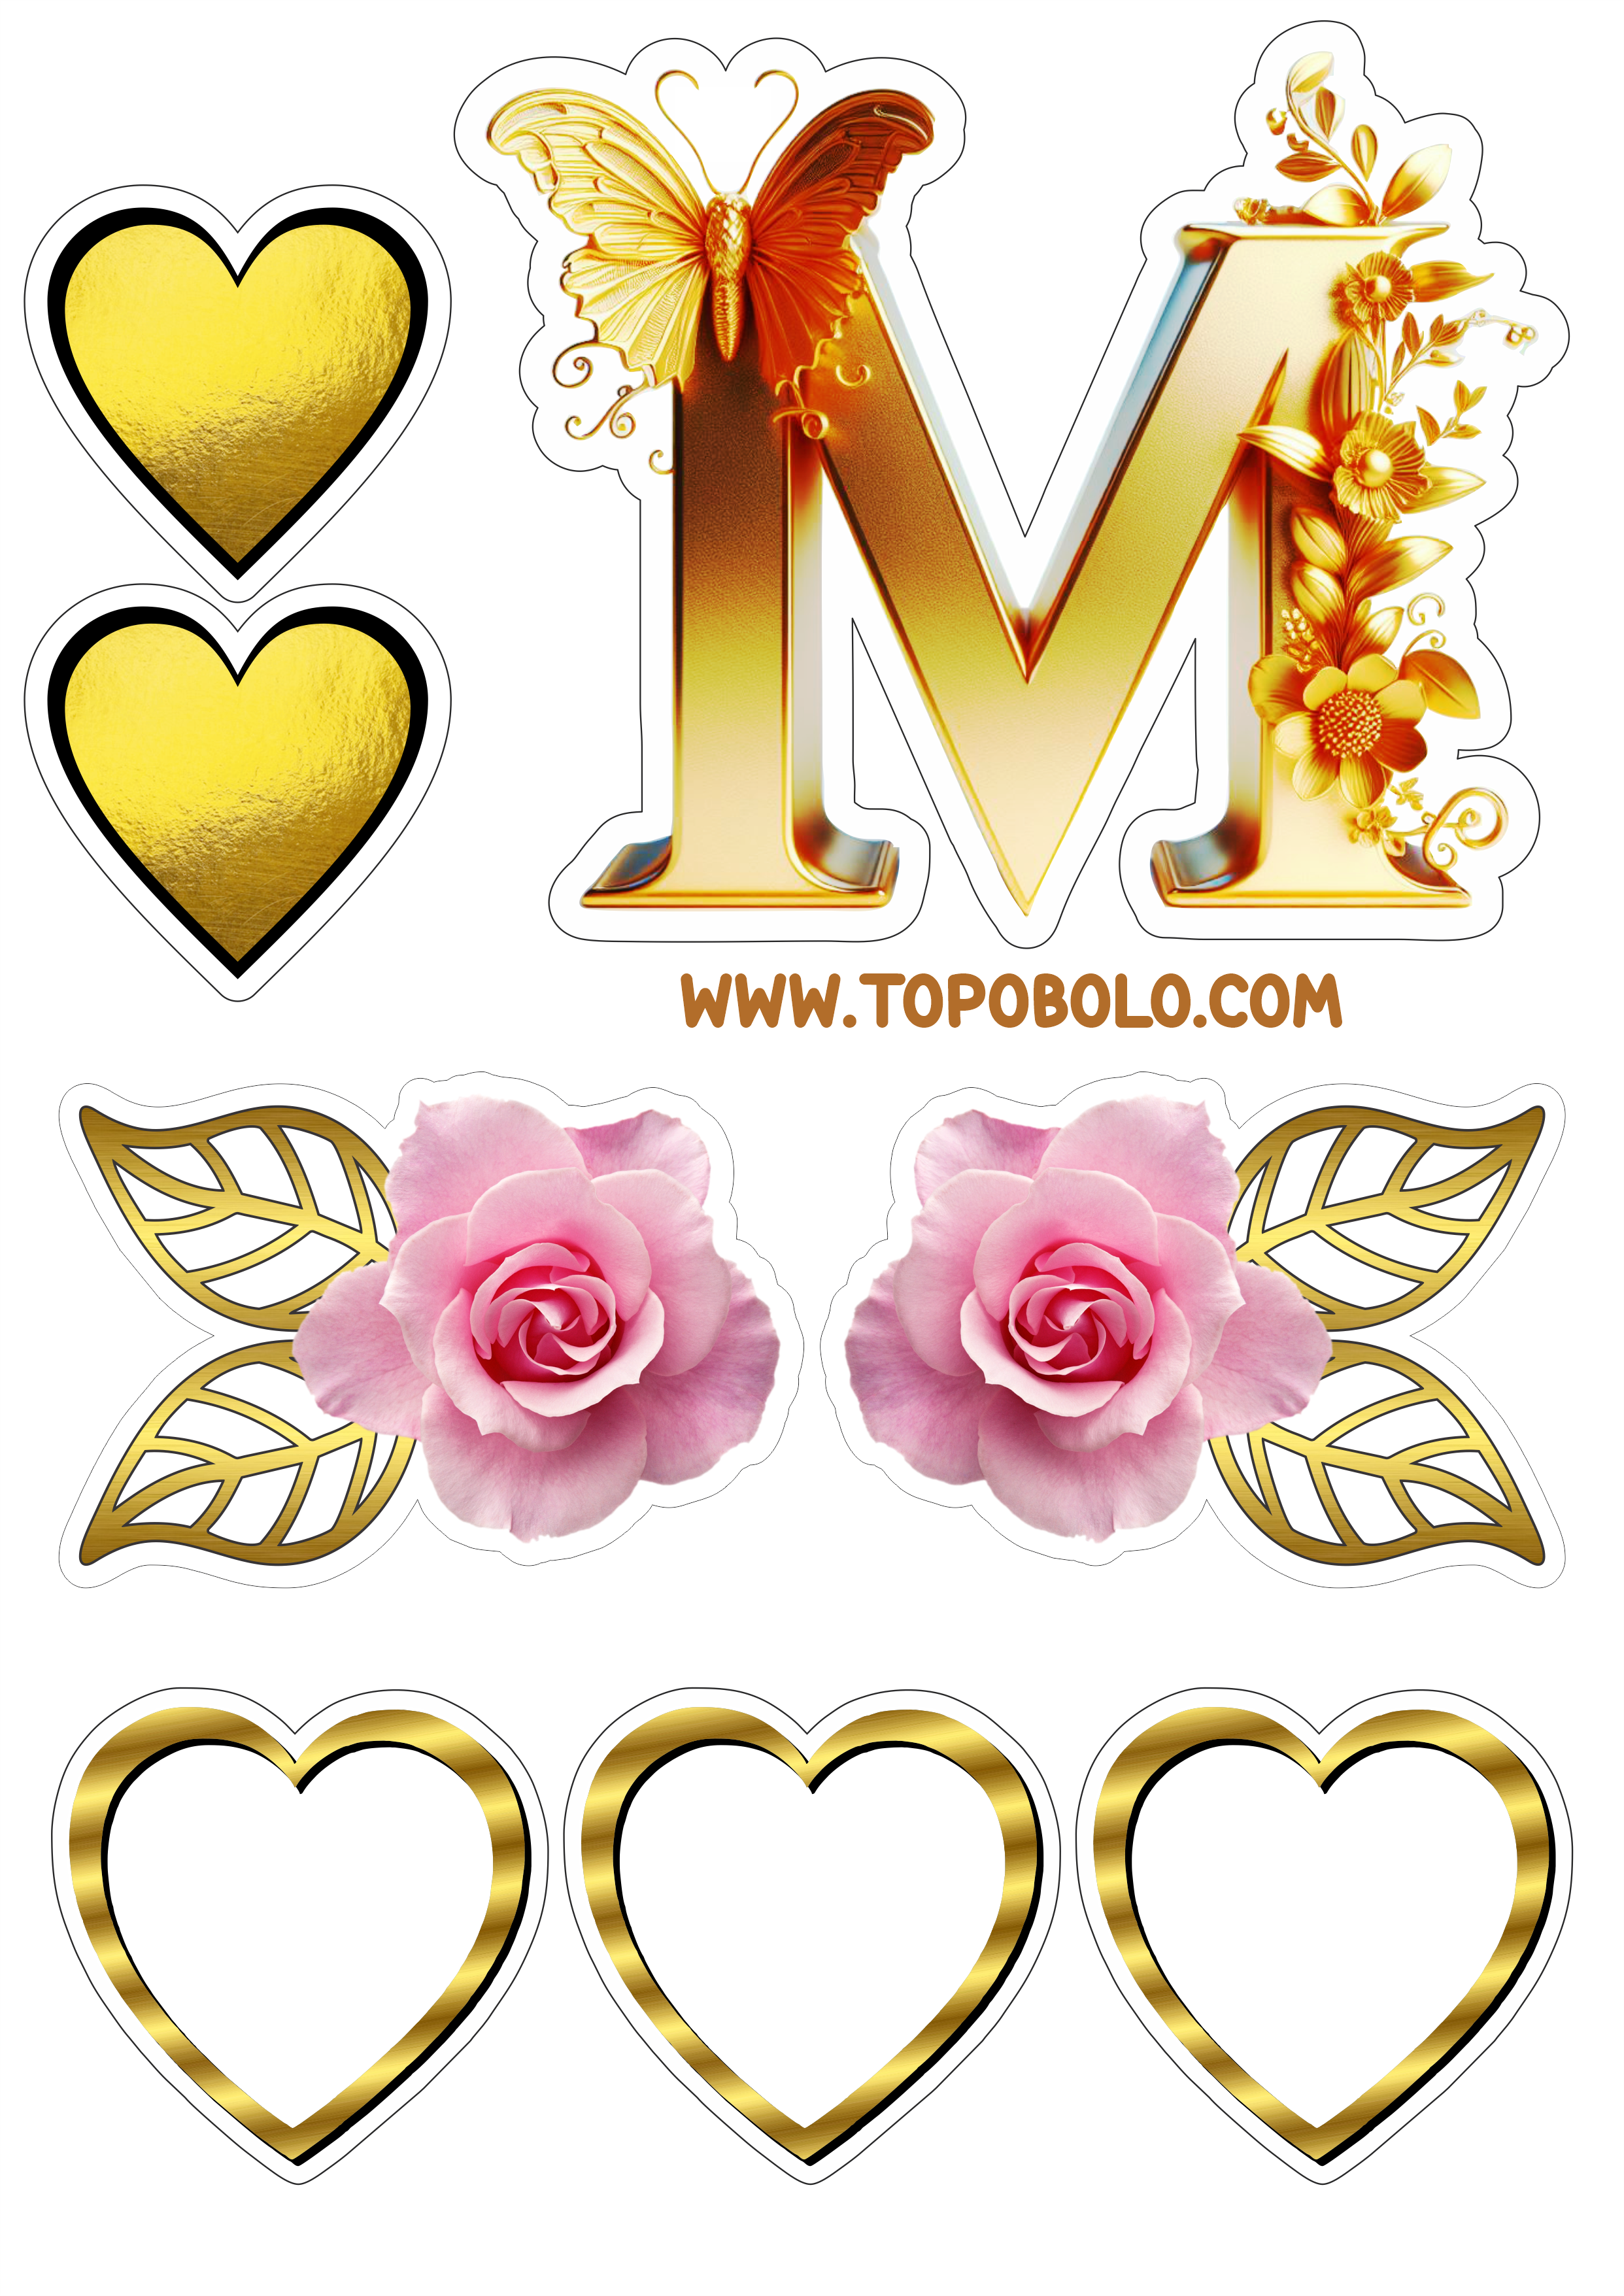 Topo de bolo dia das mães dourado flores e corações rosa pronto para imprimir papelaria criativa contorno png